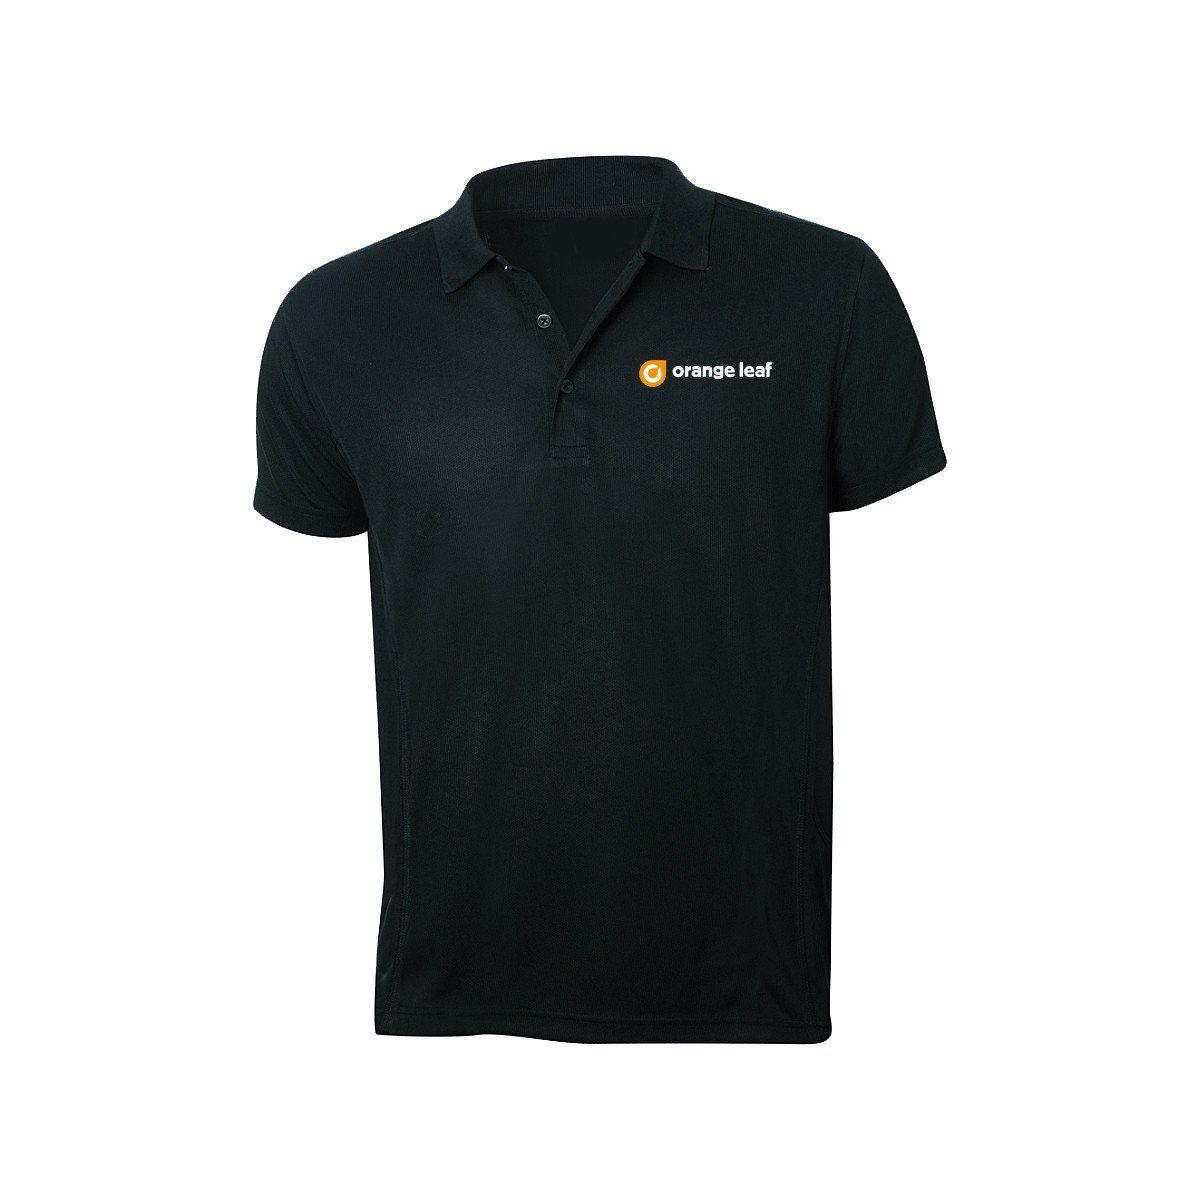 Oragne Leaf Logo - Orange Leaf Austin Uniform Store Logo Polo (Black)